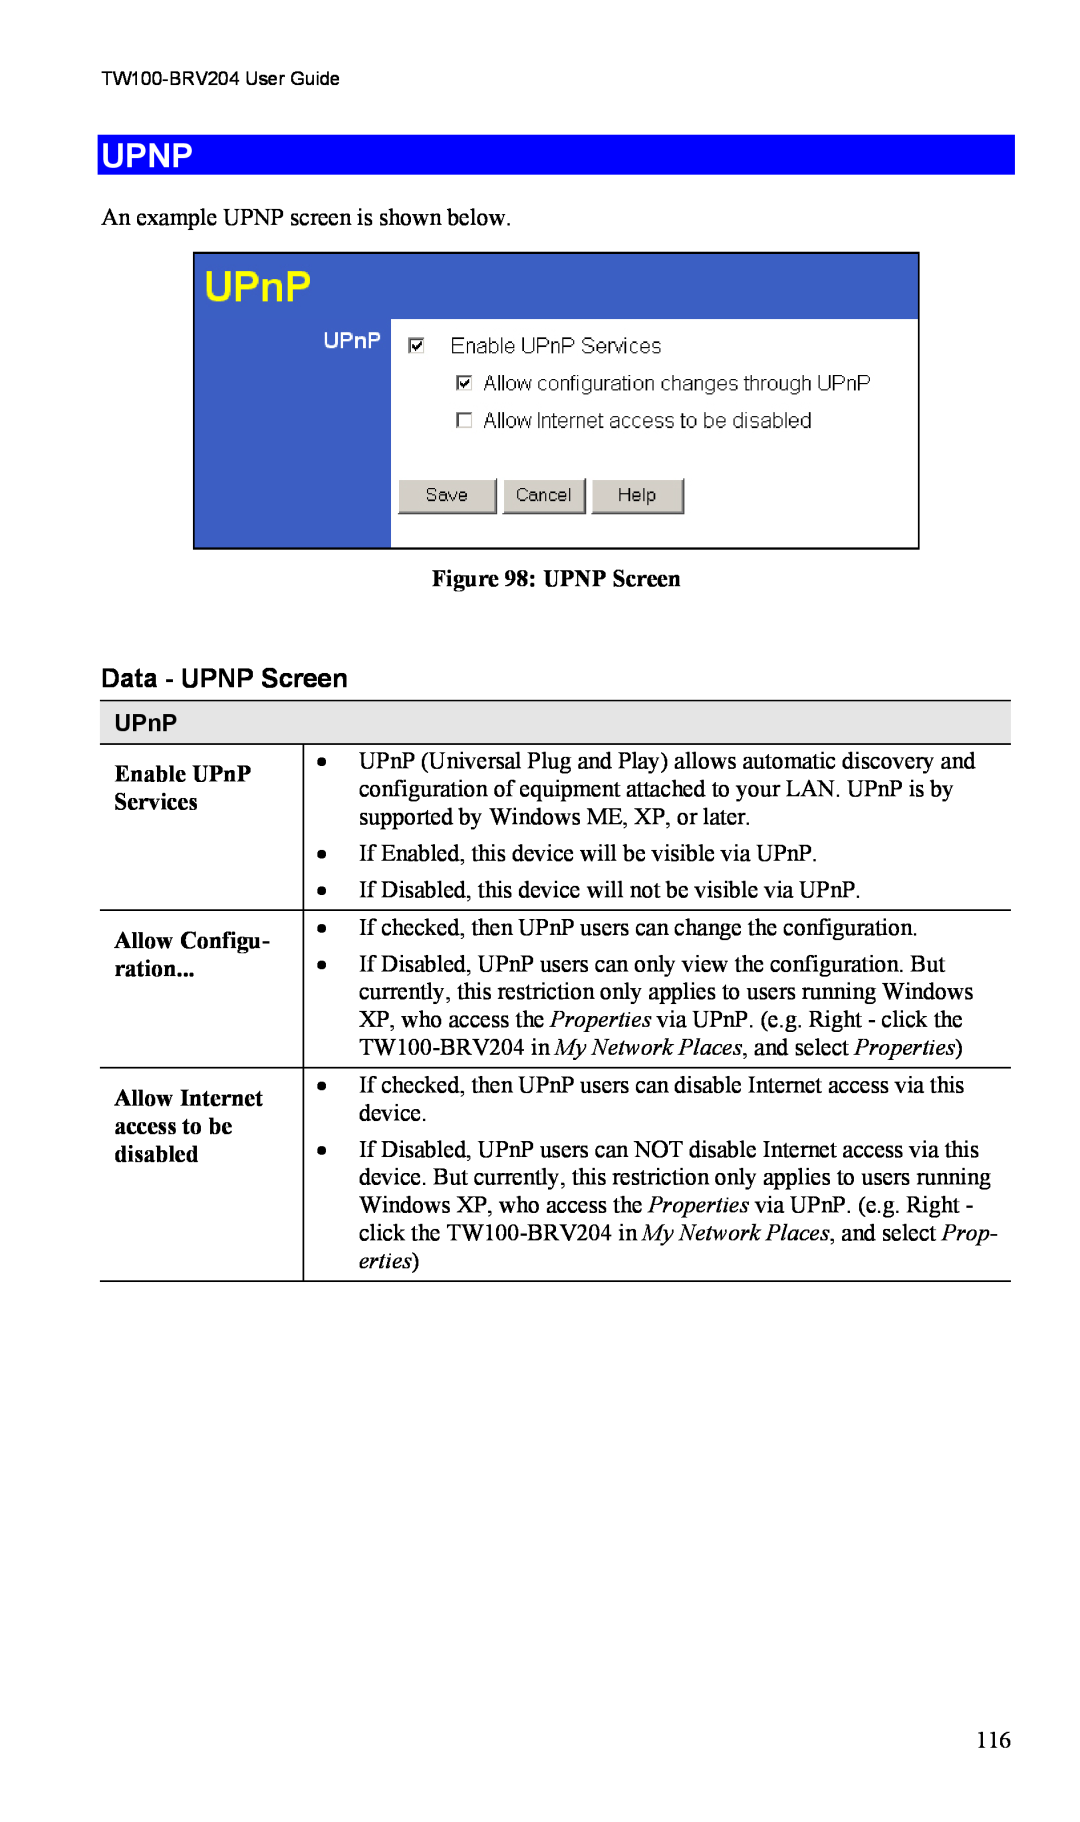 TRENDnet VPN Firewall Router, TW100-BRV204 manual Upnp, Data - UPNP Screen, UPnP, erties 